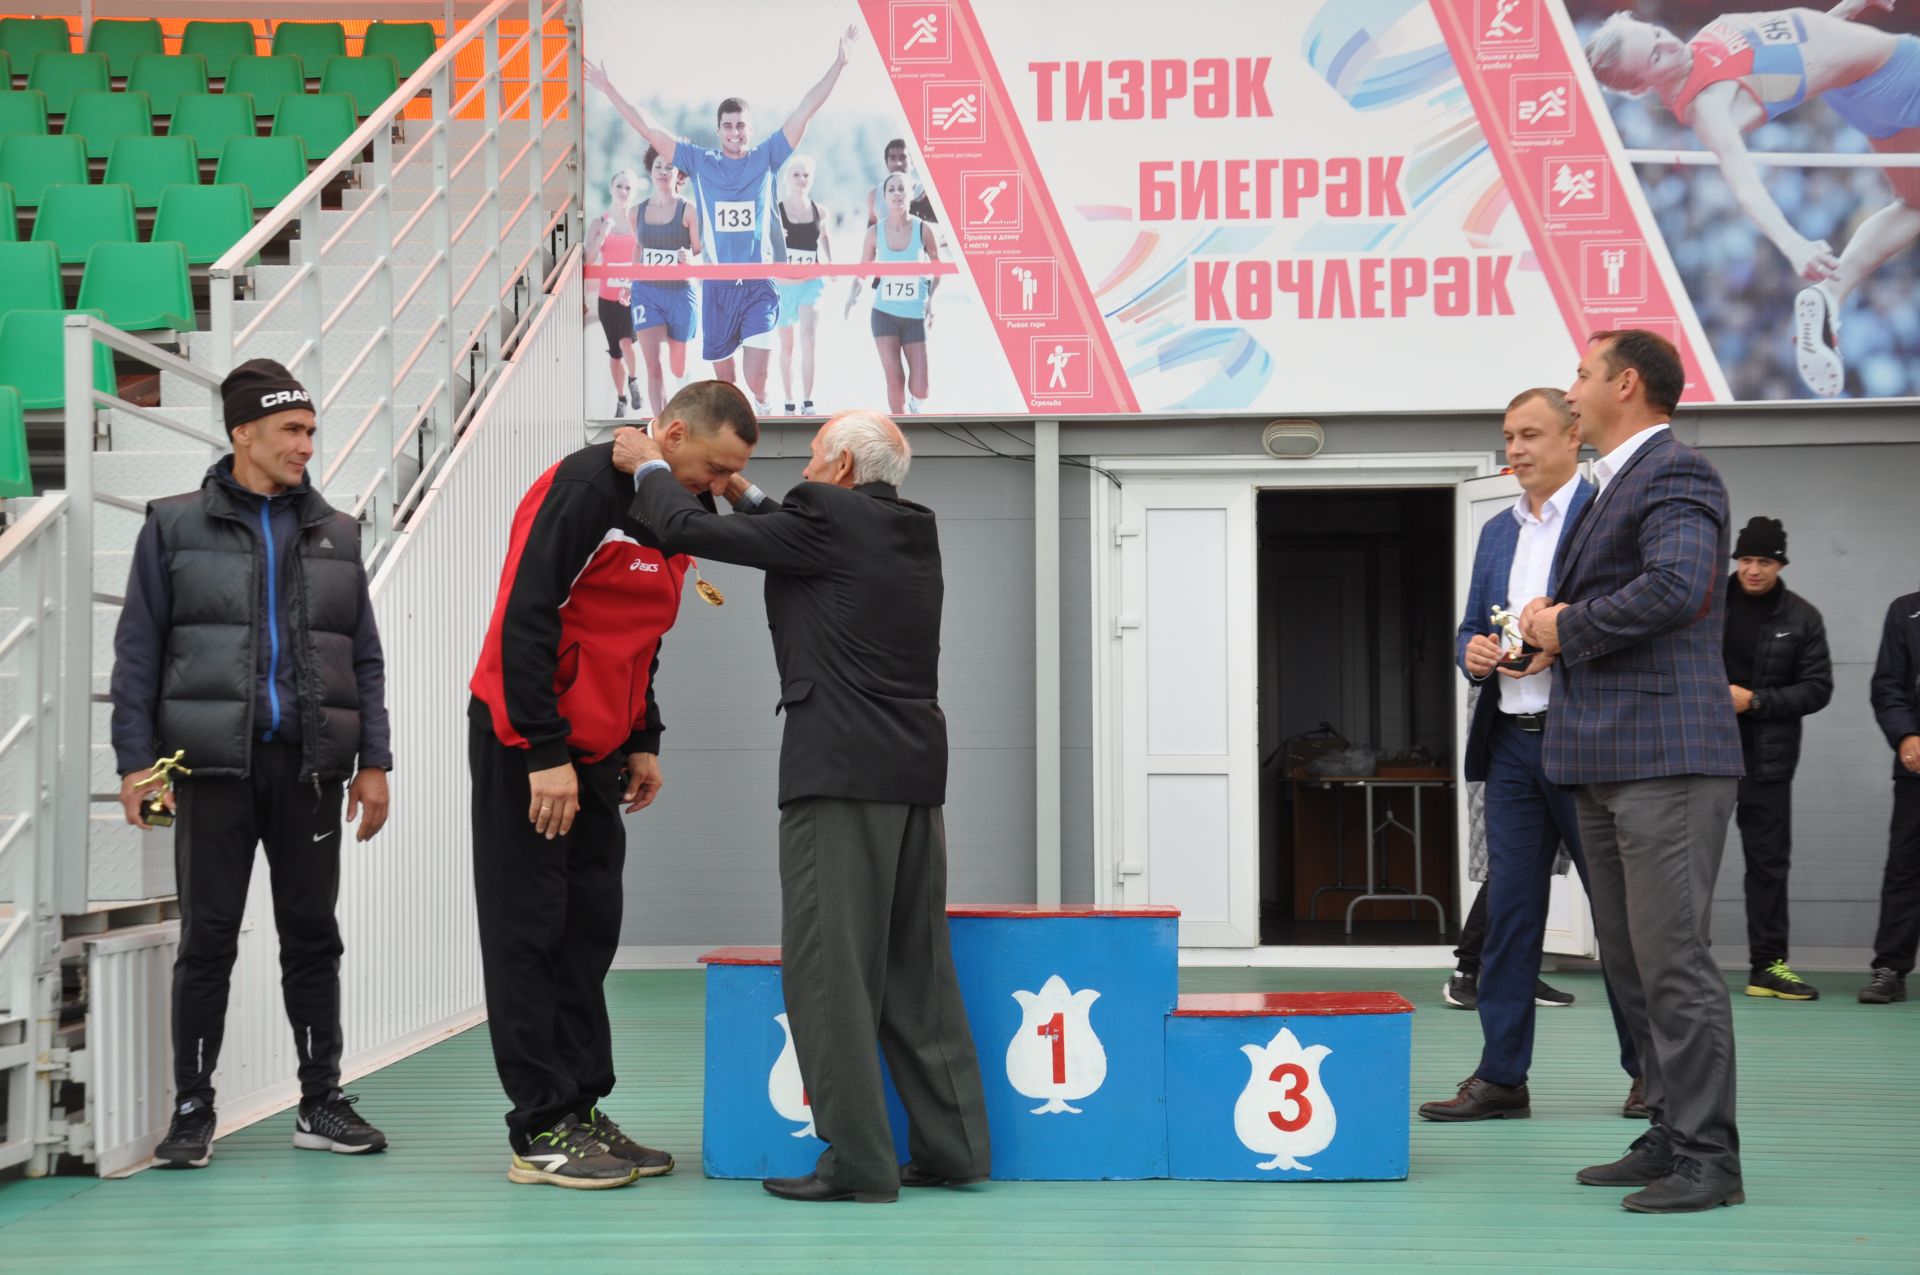 Фирдәвис Шаемовның призларына уздырылучы «Алтын көз» җинел атлетика марафоны 2018